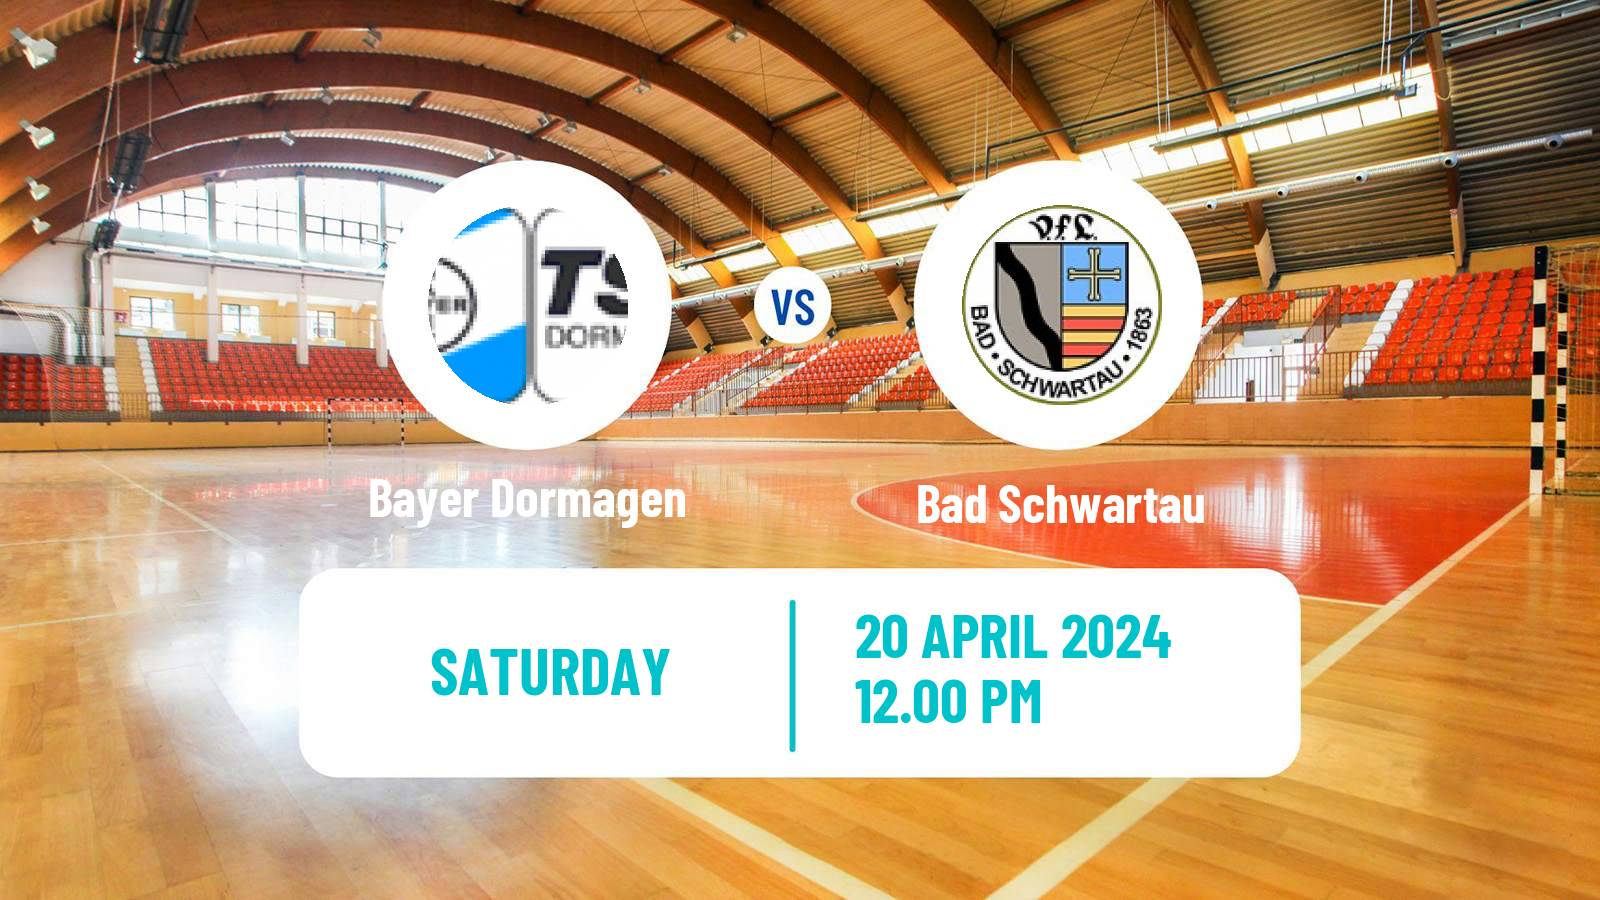 Handball German 2 Bundesliga Handball Bayer Dormagen - Bad Schwartau